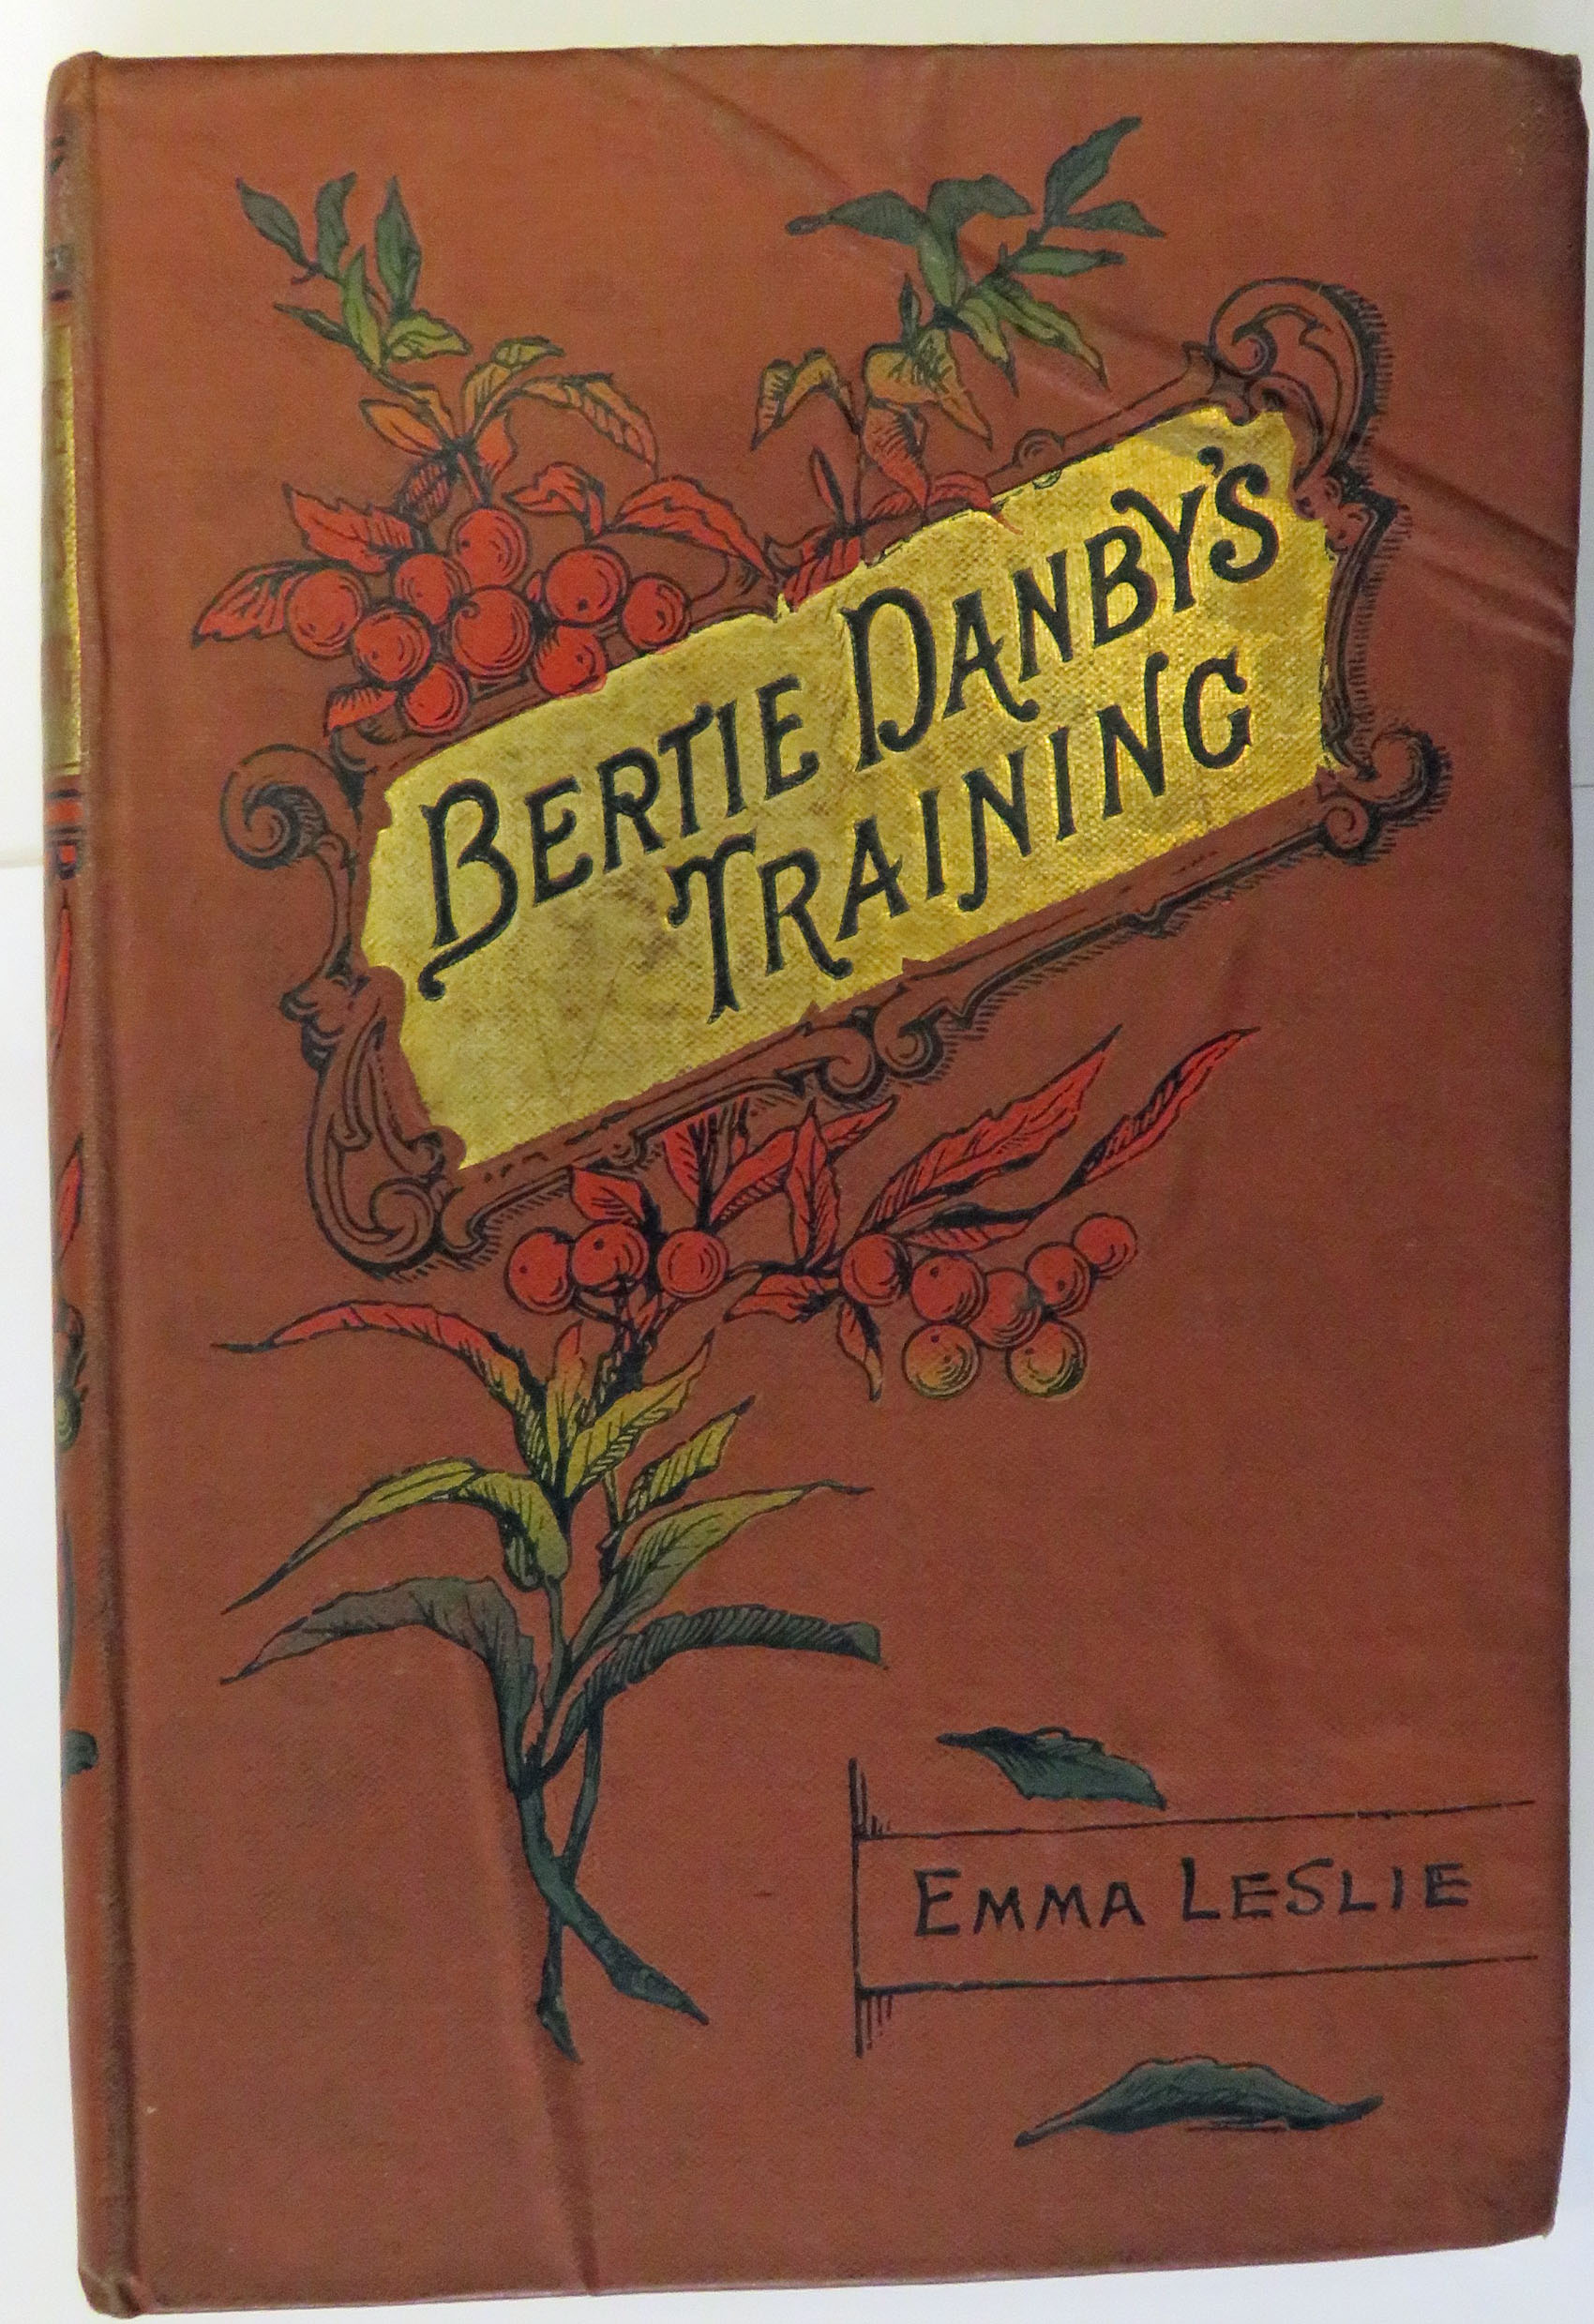 Bertie Danby's Training